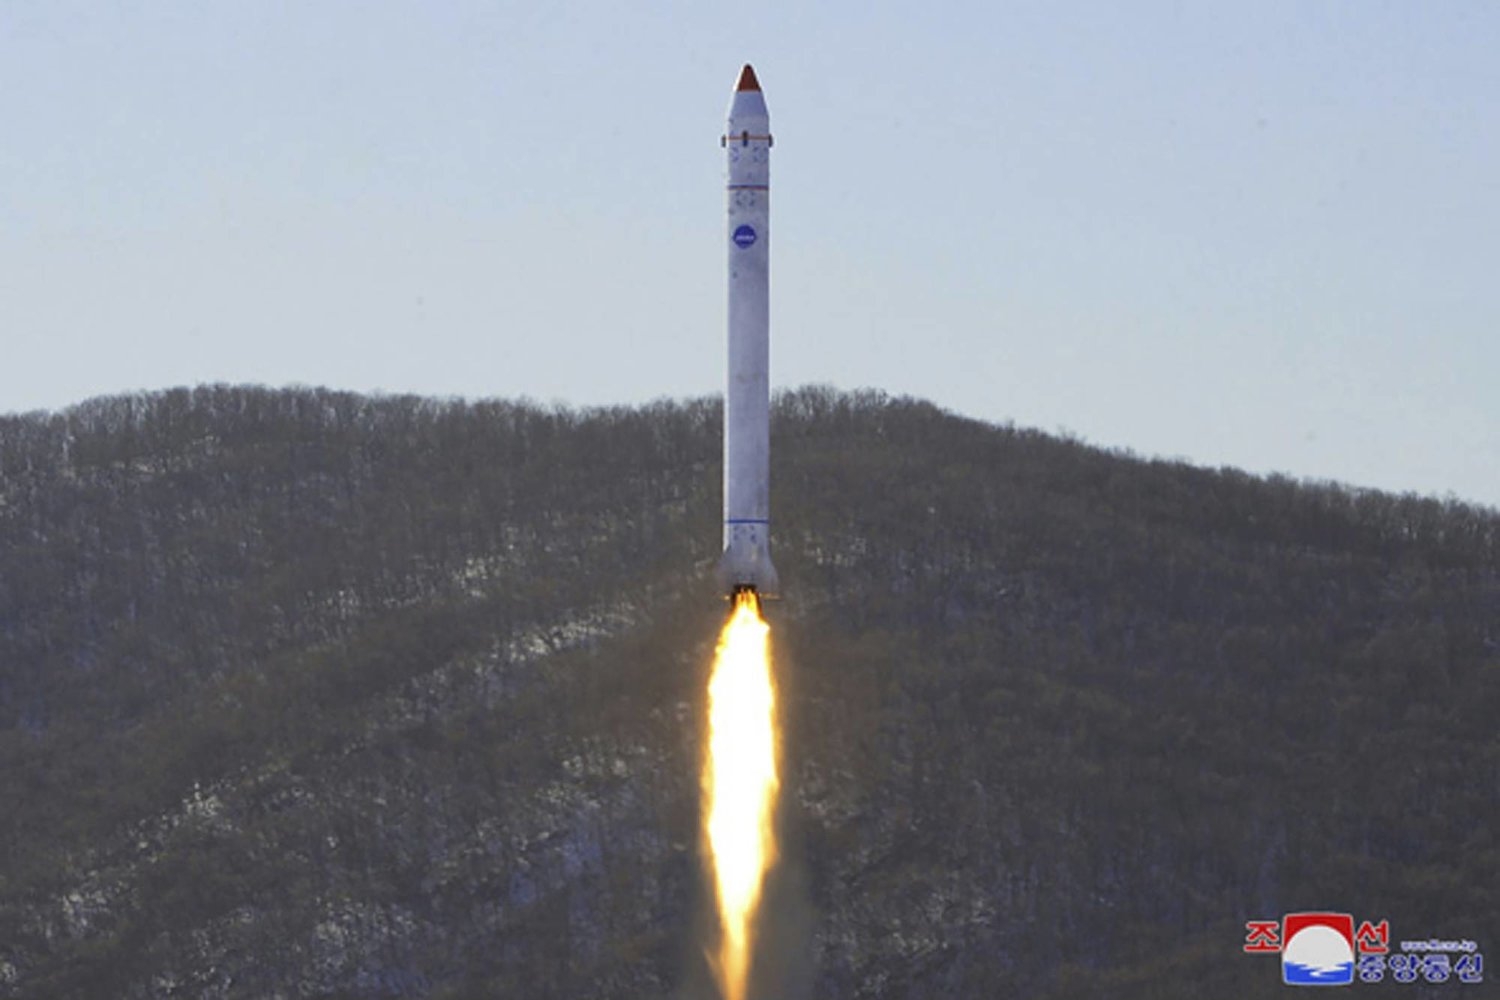 كوريا الشمالية تستعد لإطلاق قمر صناعي للتجسّس على الولايات المتحدة